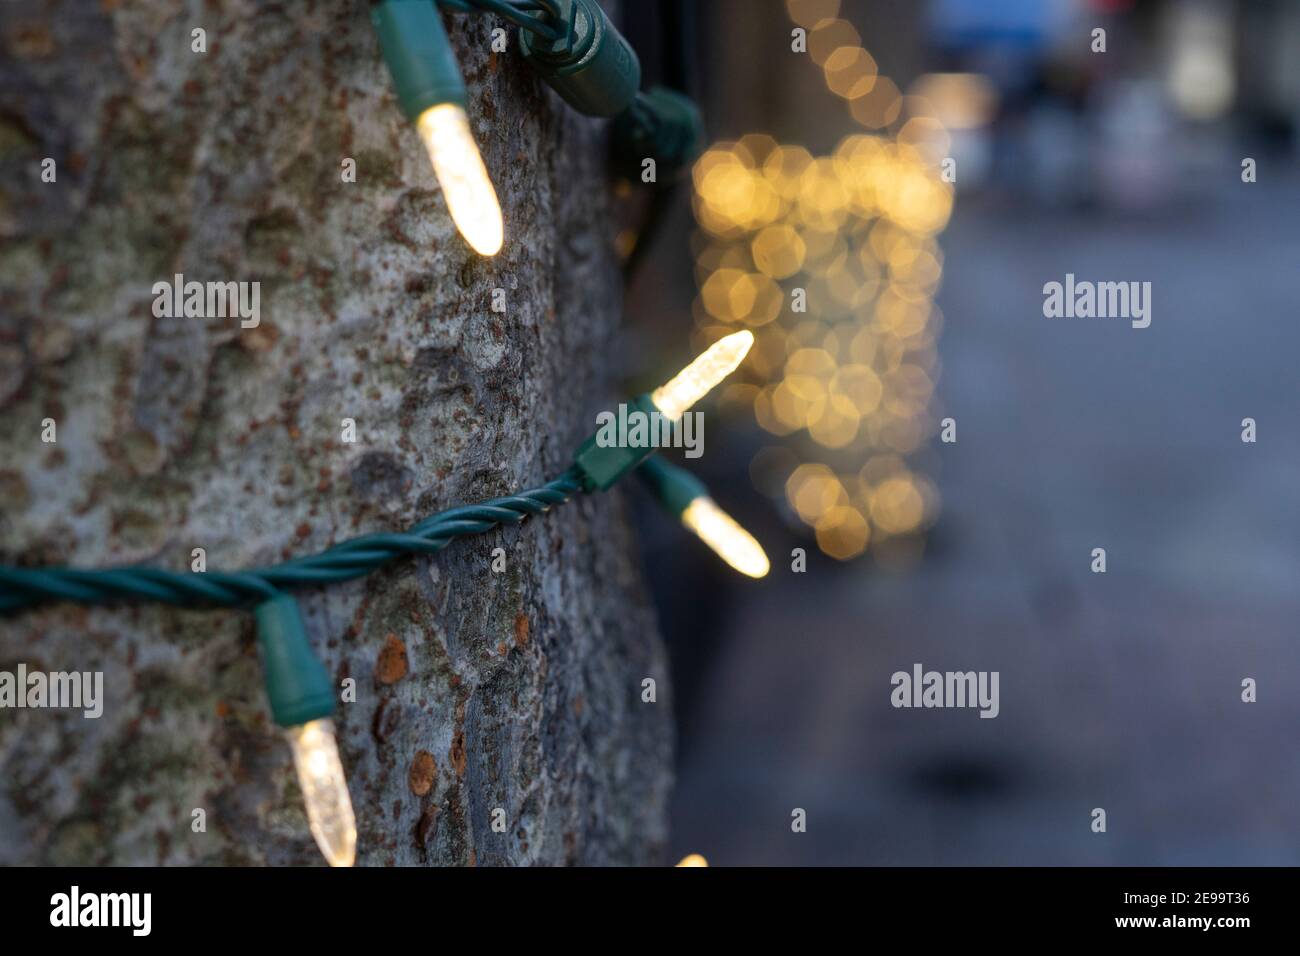 Gros plan sur les lumières enveloppées autour d'une base d'arbre et de branches fortes; prises pendant l'hiver près des vacances de Noël. Banque D'Images